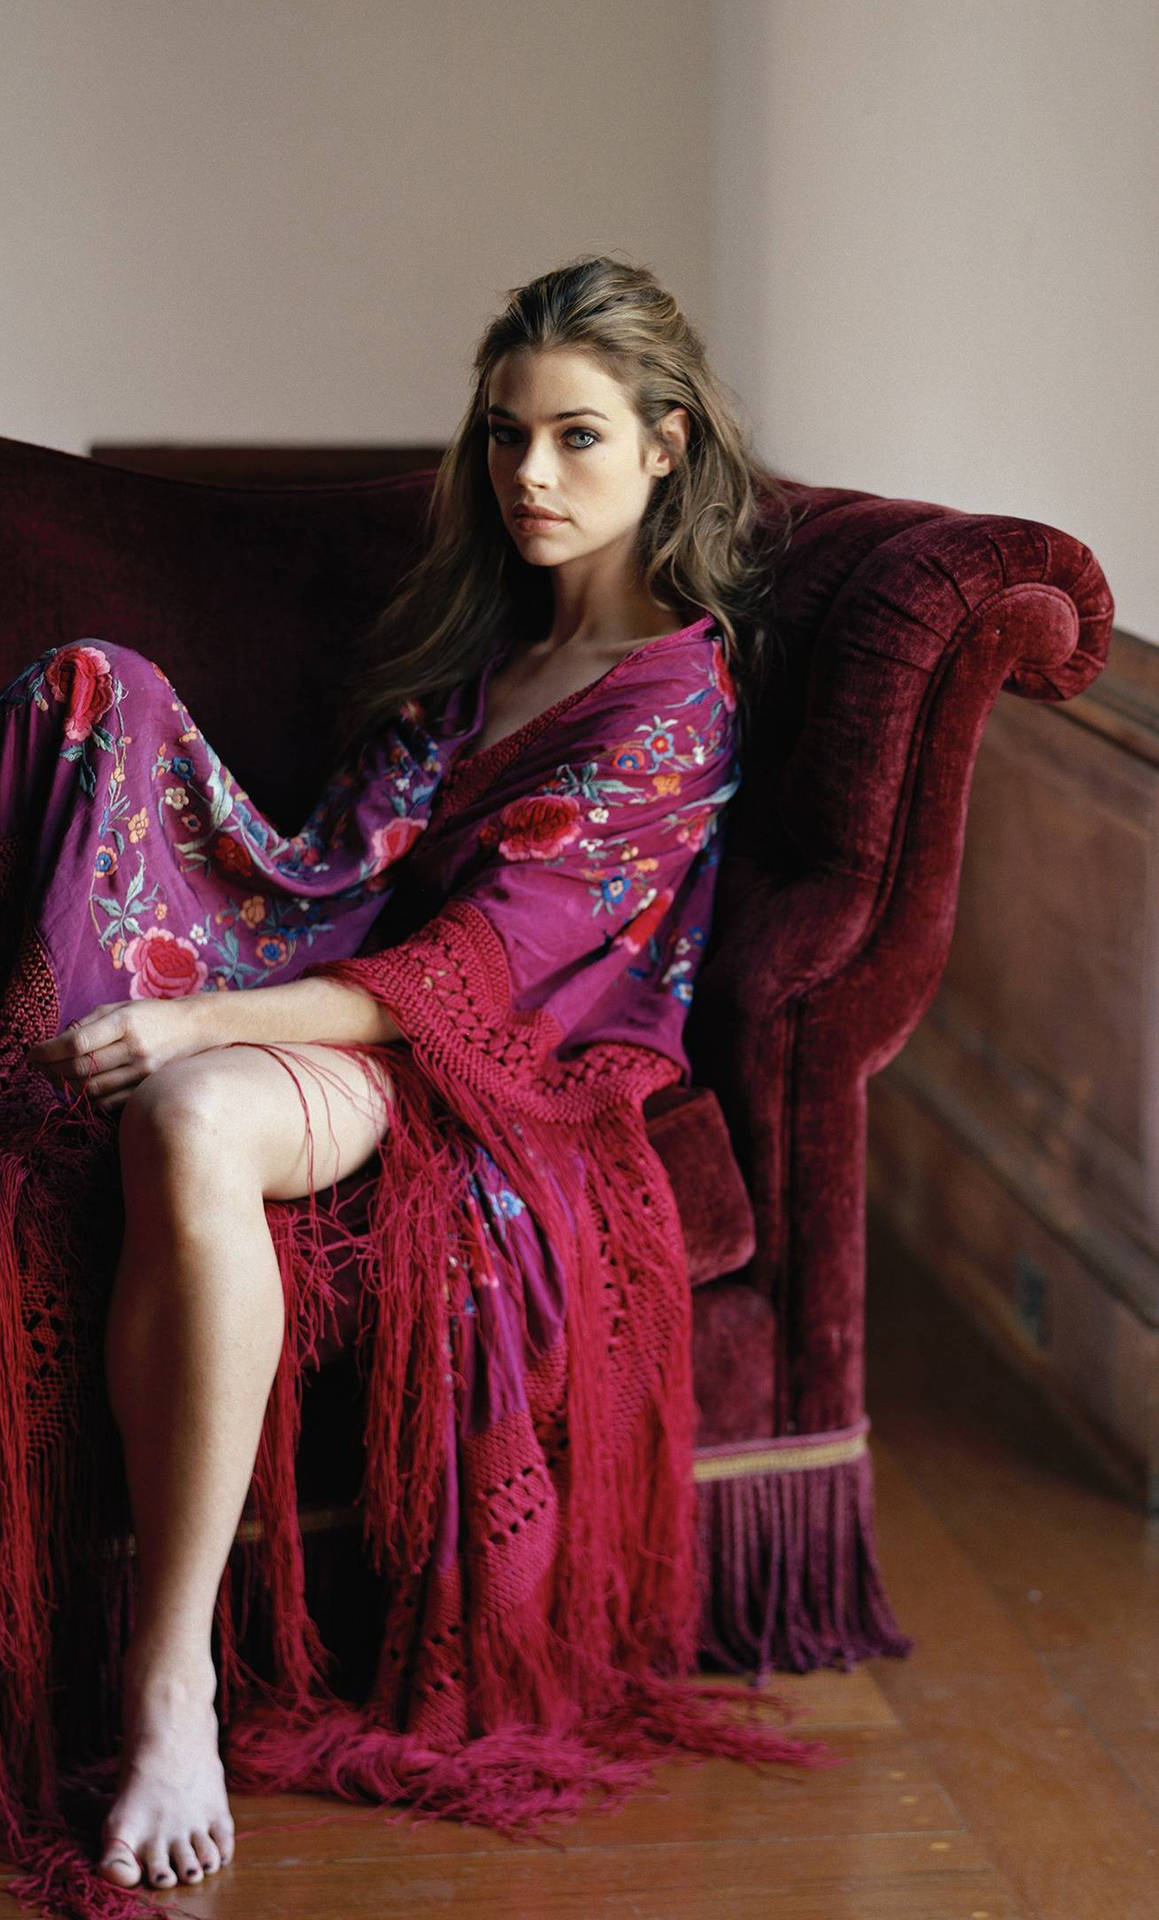 American Model Denise Richards Velvet Sofa Pose Wallpaper